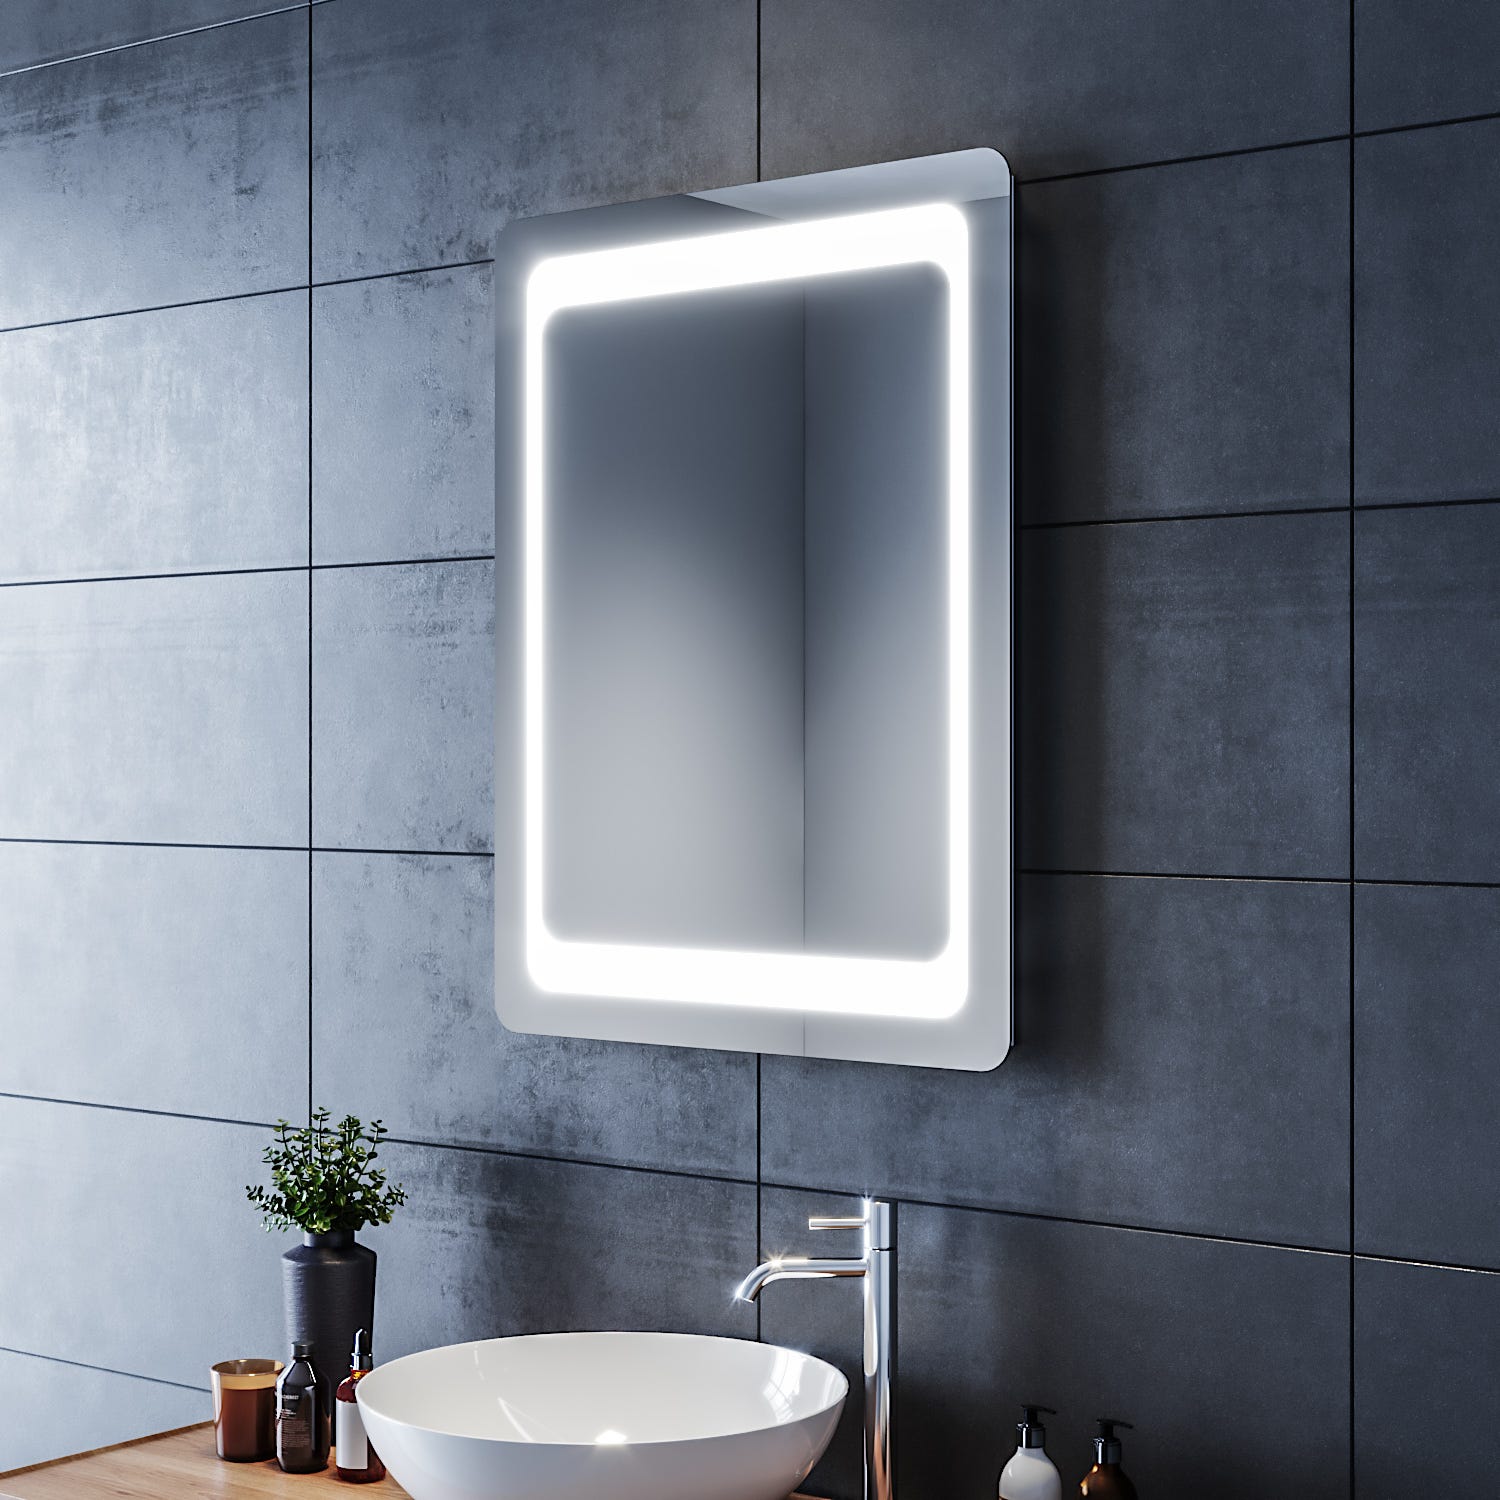 SIRHONA Miroir LED Salle de Bain 80x60cm Miroir Lumineux Salle de Bain avec Eclairage Intégré Anti-buée, Intrrupteur Infrarouge 2